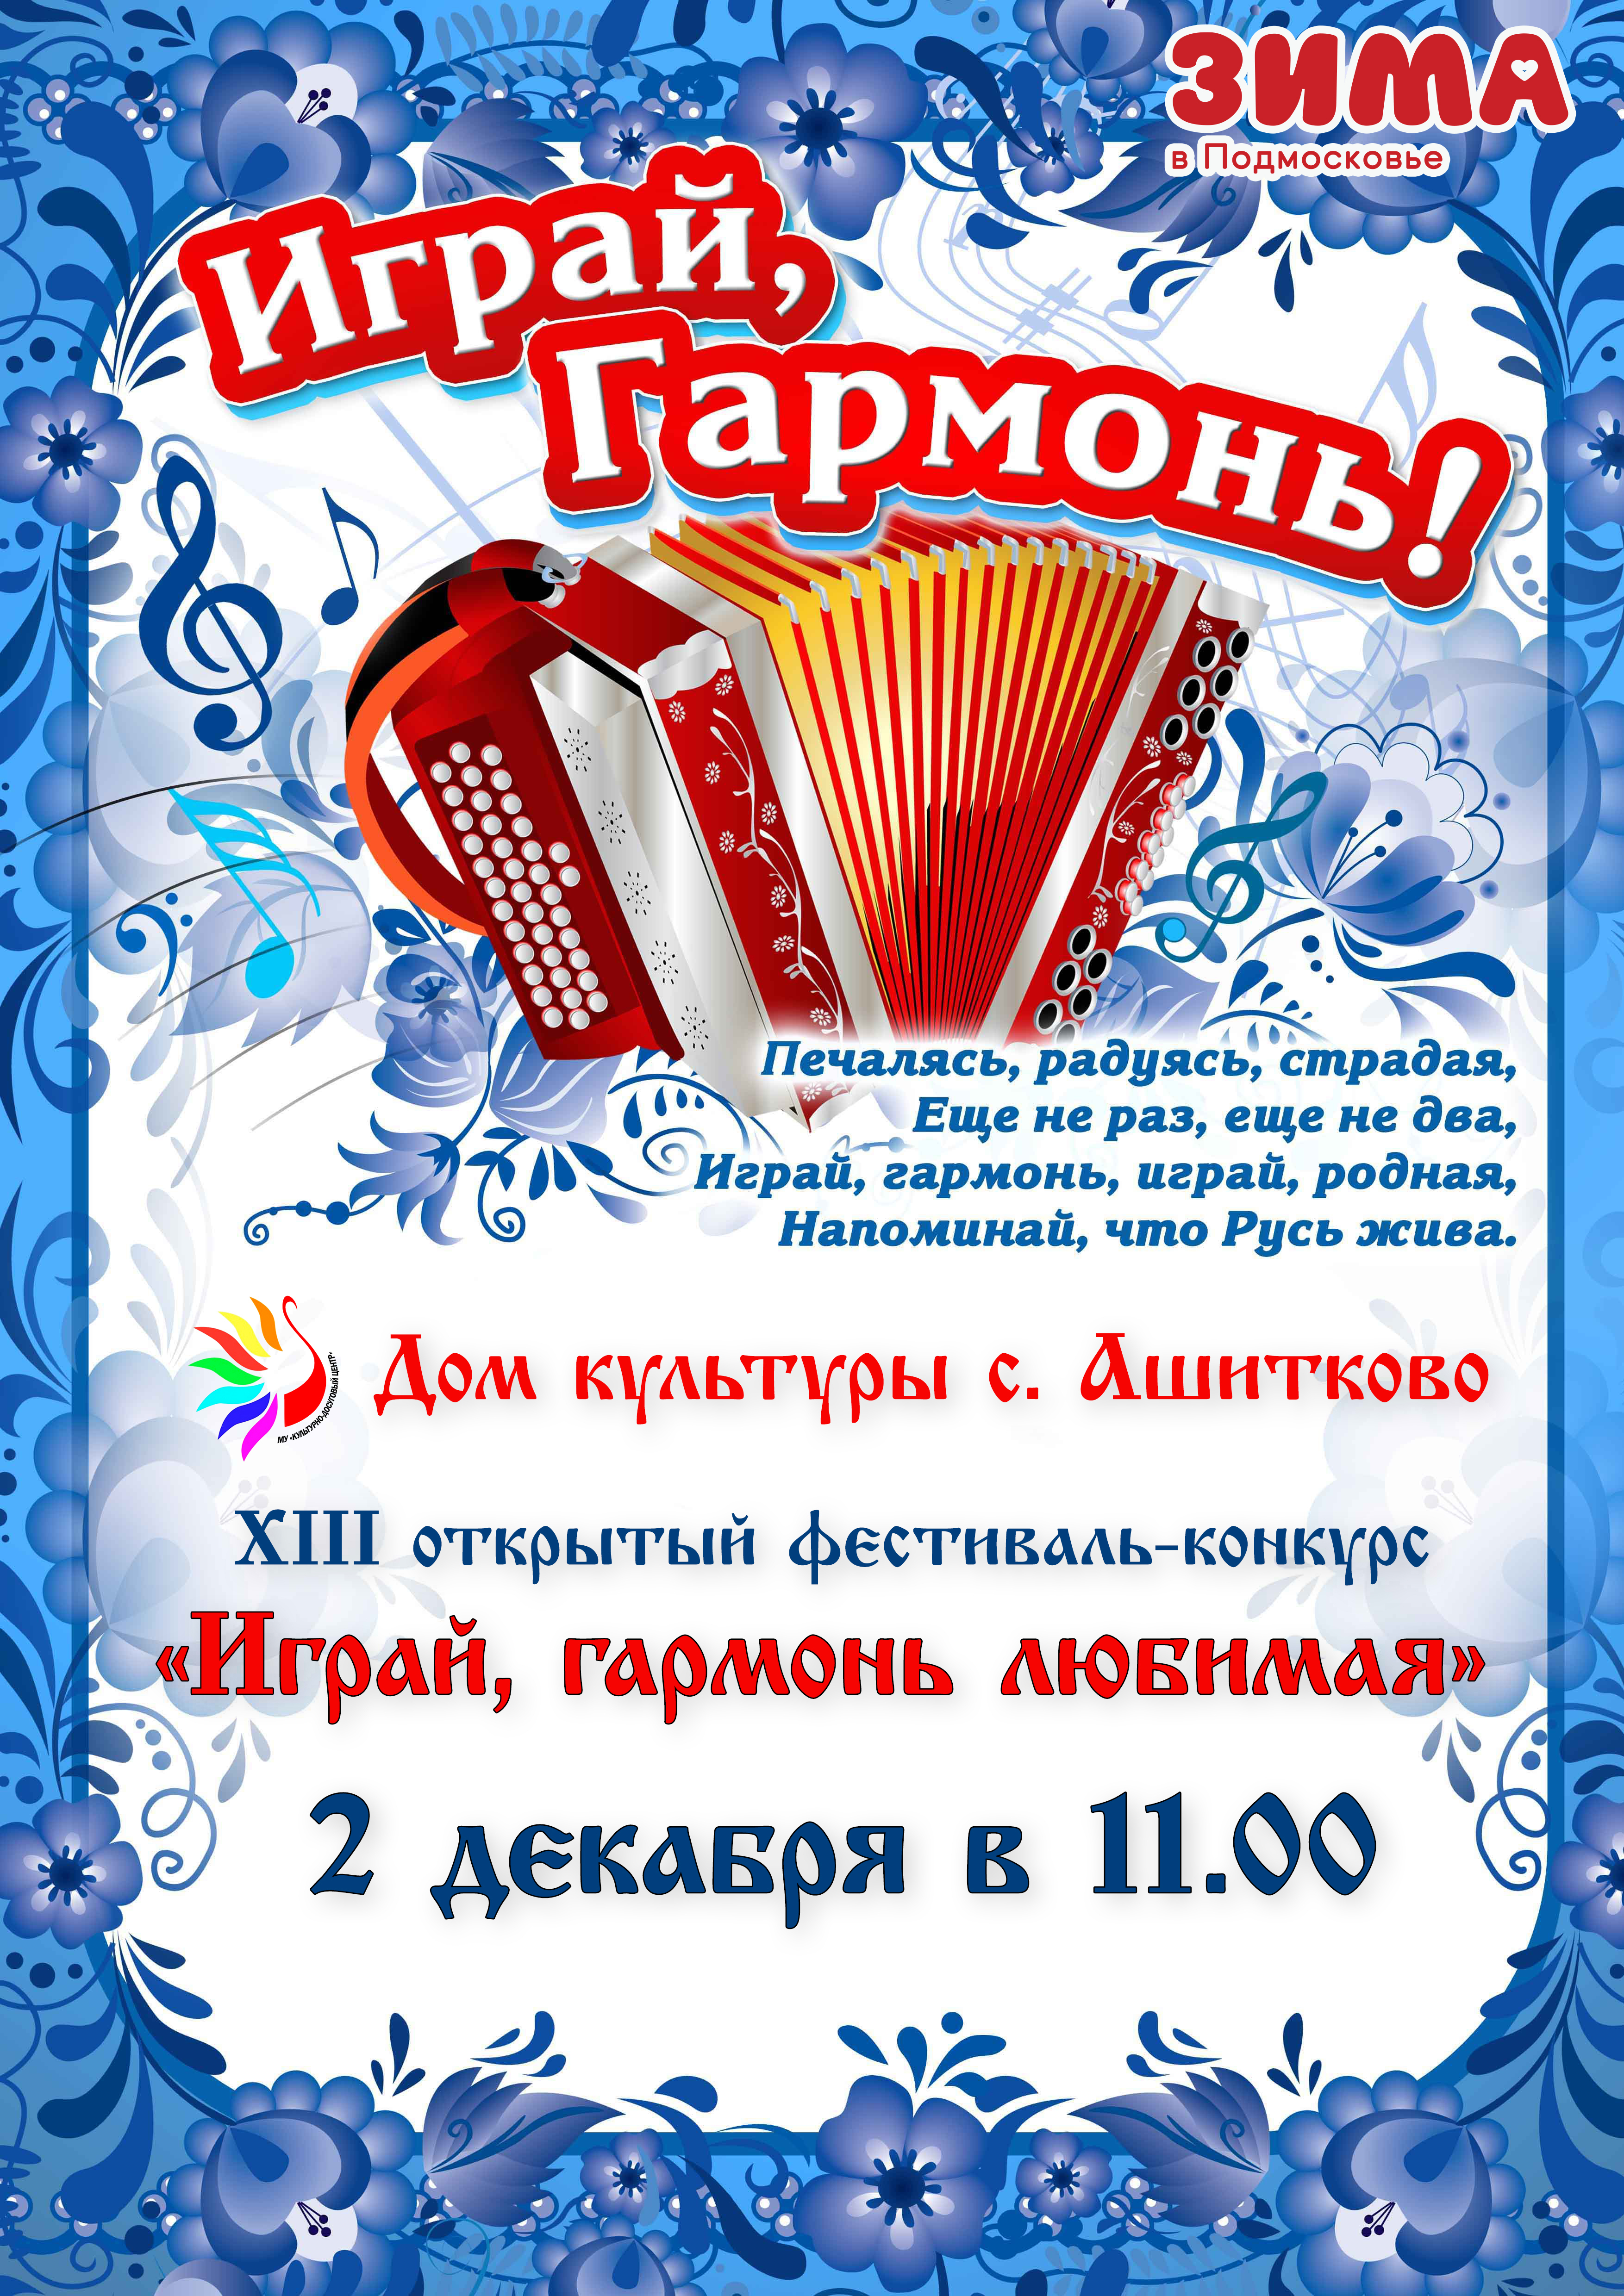 XIII открытый фестиваль-конкурс «Играй, гармонь любимая!»